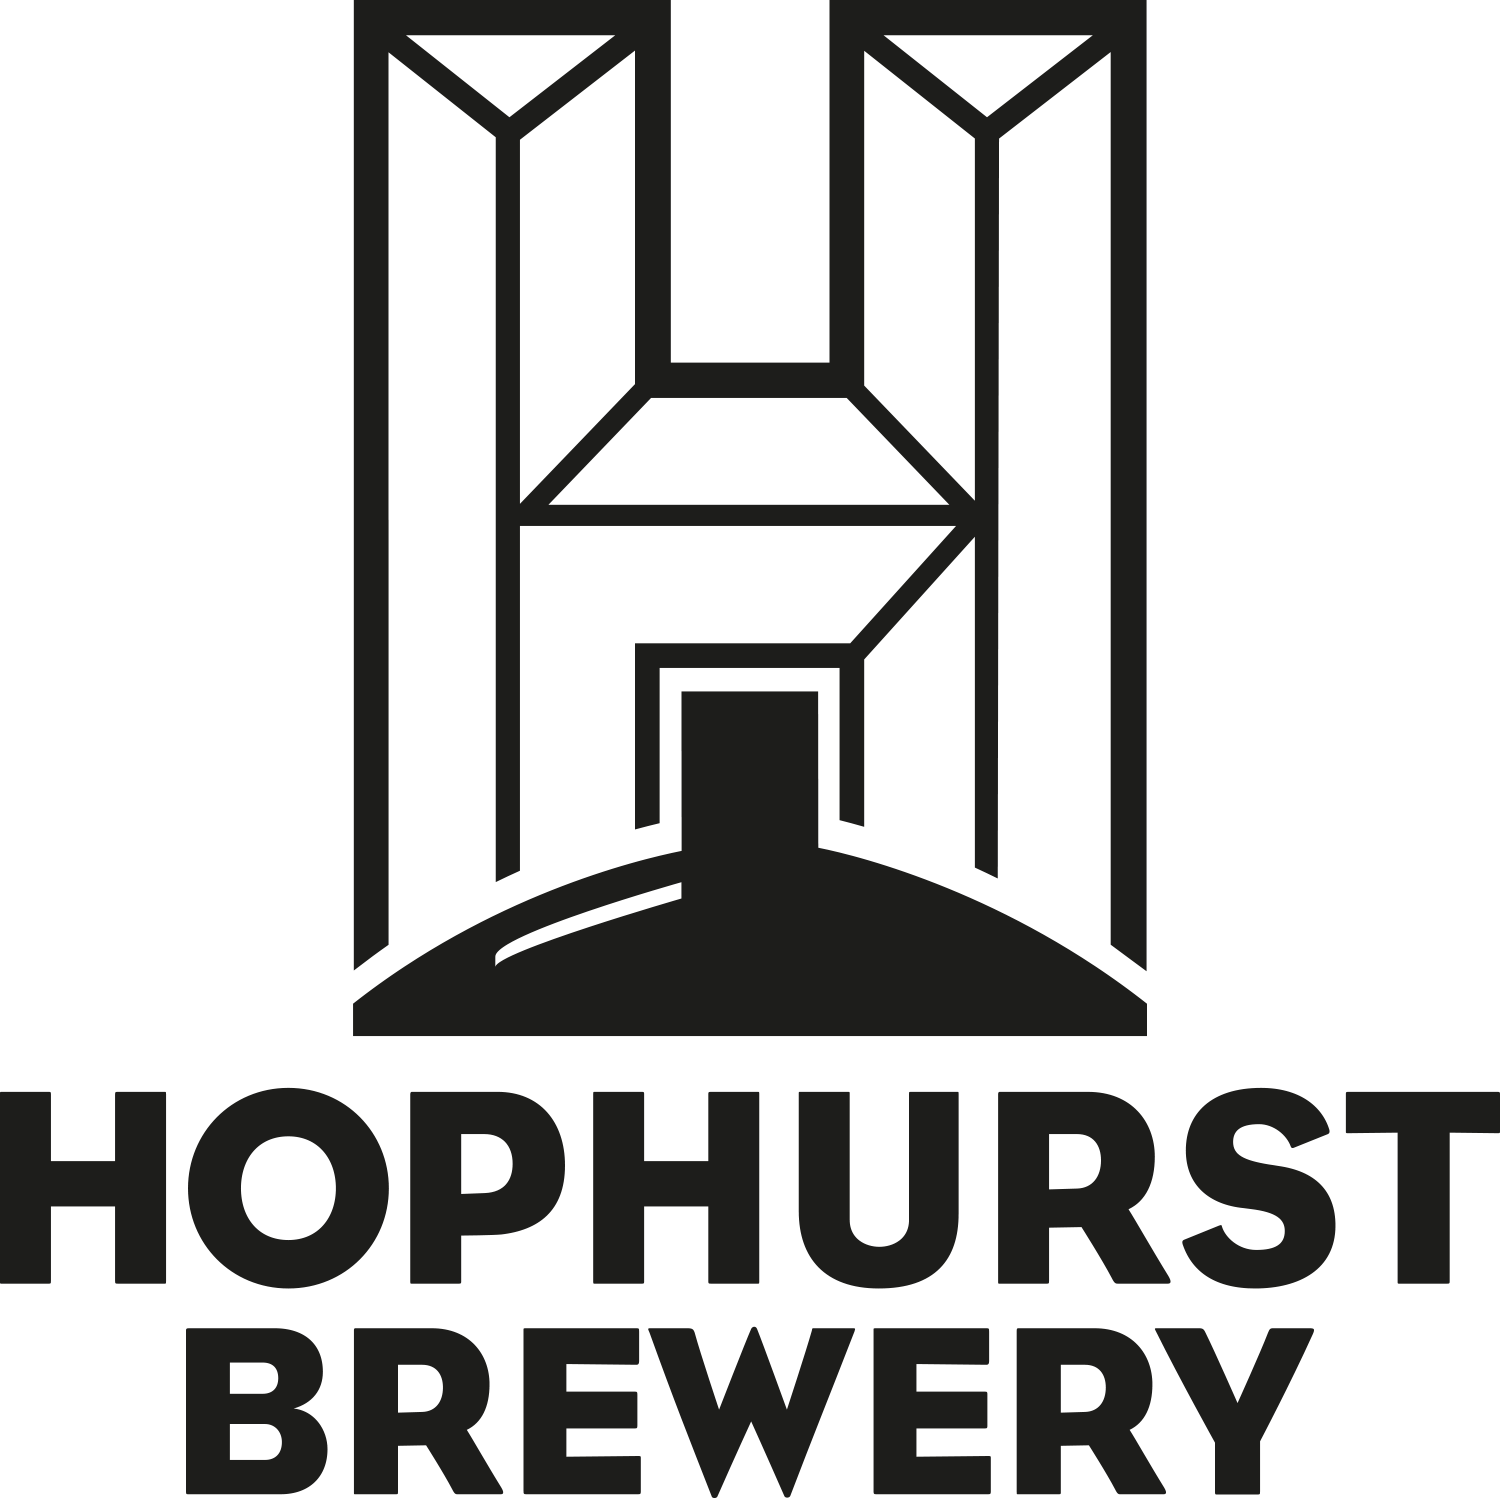 Hophurst Brewery